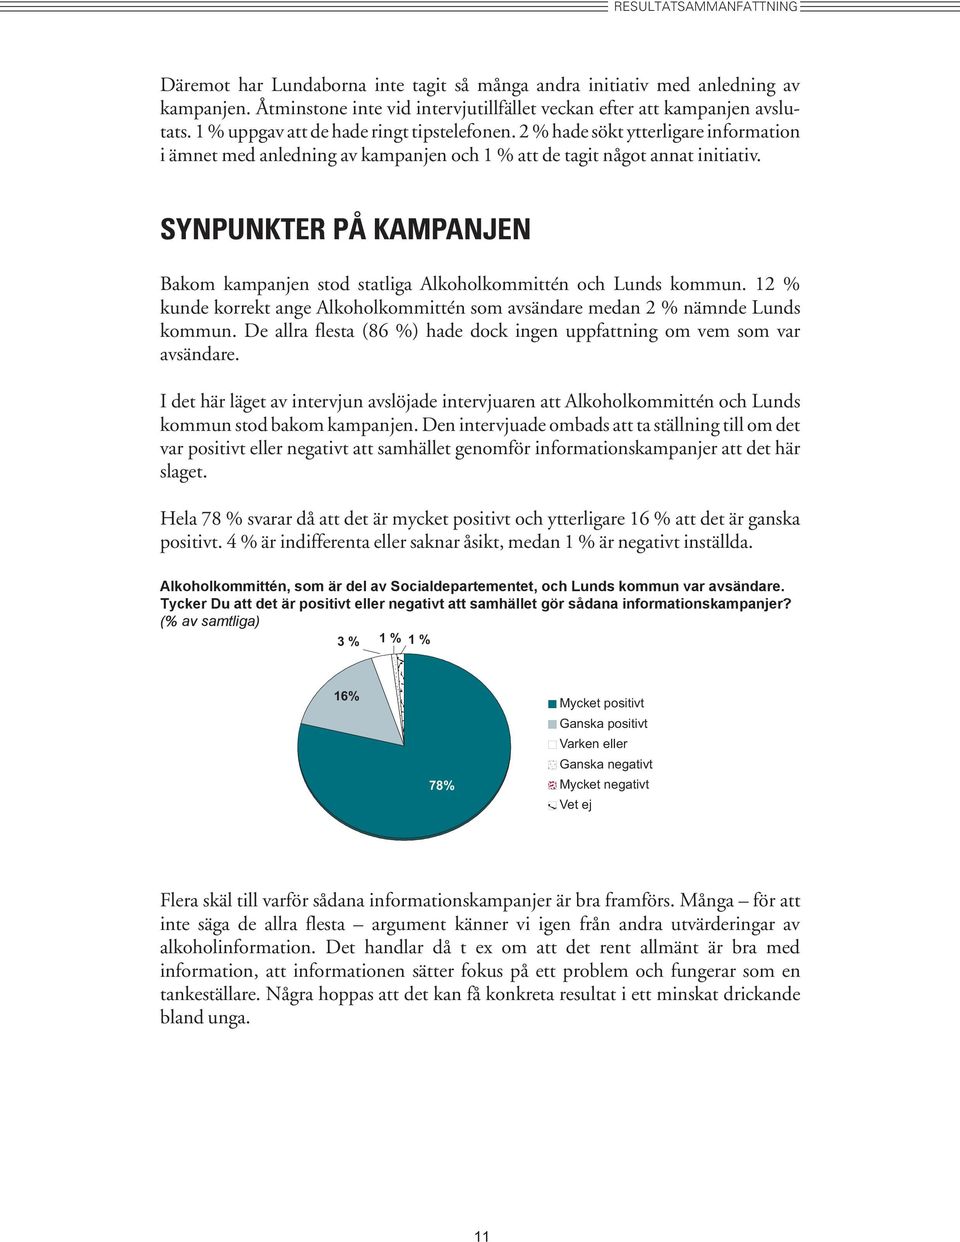 SYNPUNKTER PÅ KAMPANJEN Bakom kampanjen stod statliga Alkoholkommittén och Lunds kommun. 12 % kunde korrekt ange Alkoholkommittén som avsändare medan 2 % nämnde Lunds kommun.